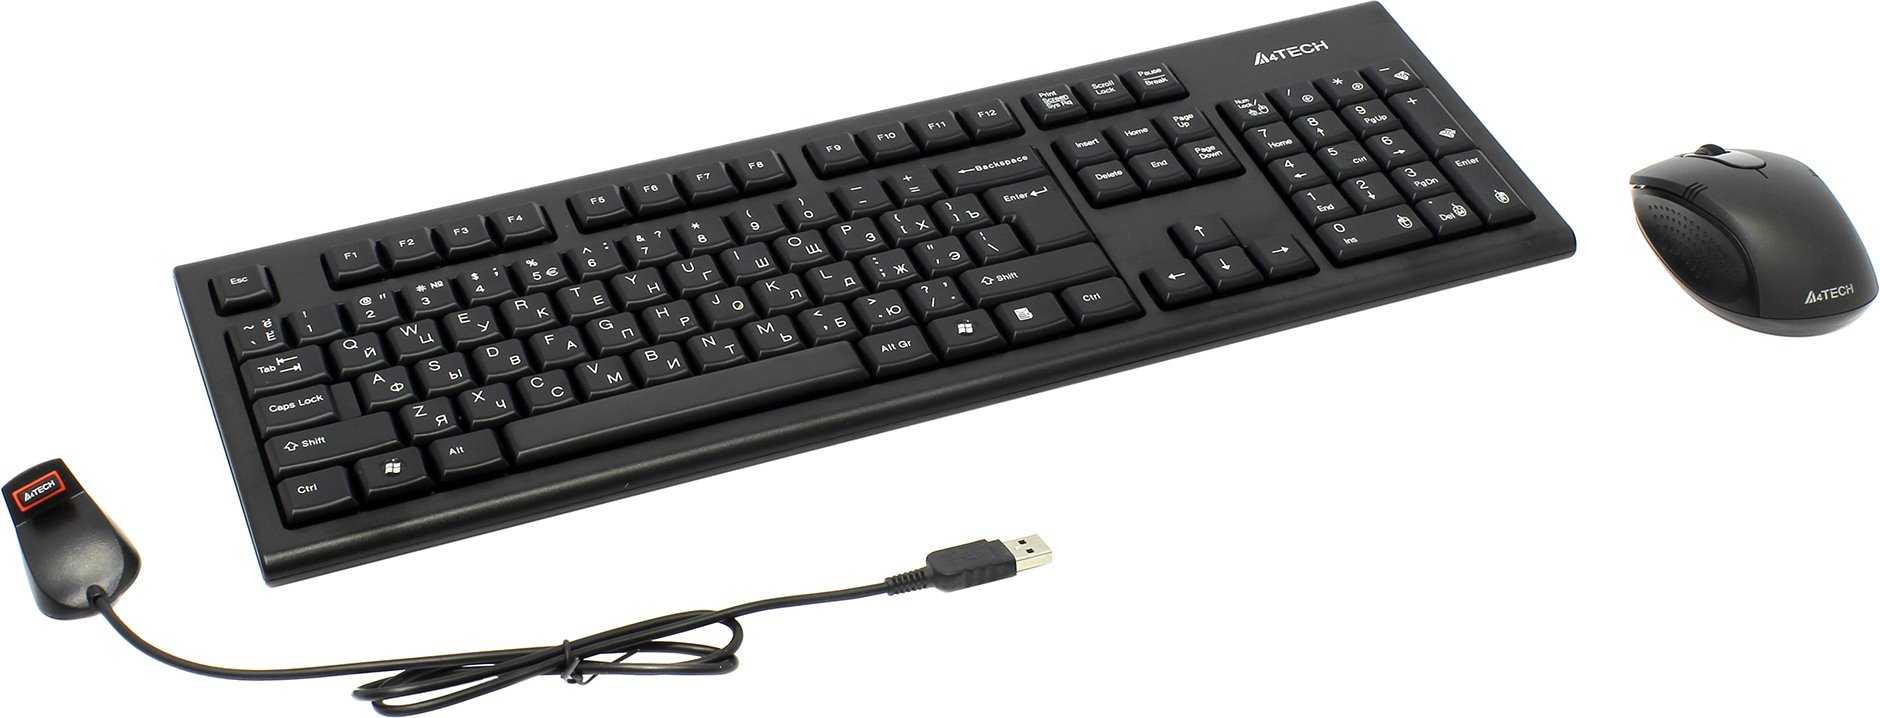 Комплект клавиатура+мышь a4tech 7100n usb купить за 1390 руб в краснодаре, отзывы, видео обзоры и характеристики